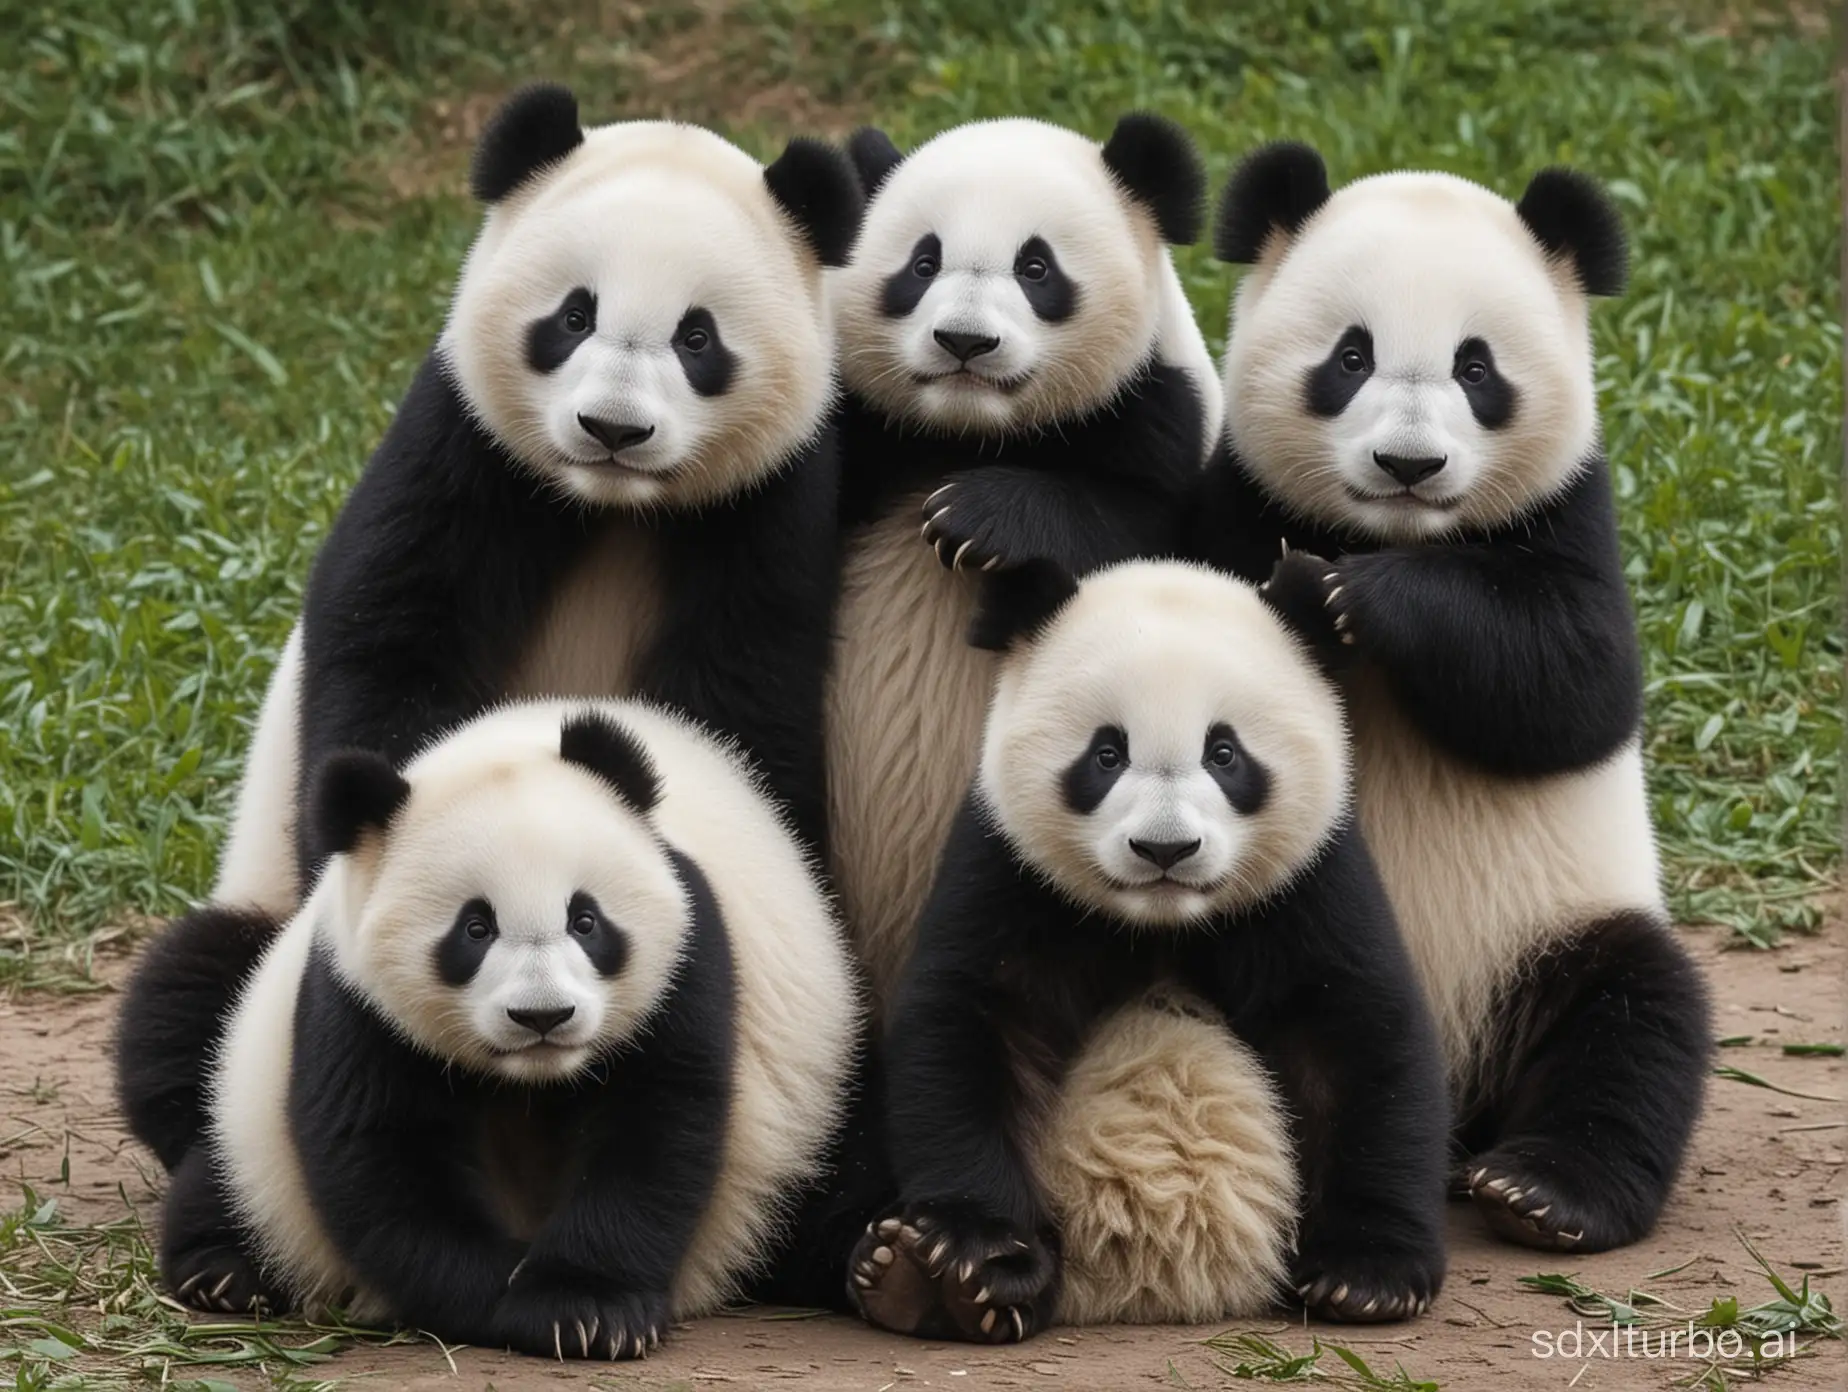 Cute pandas